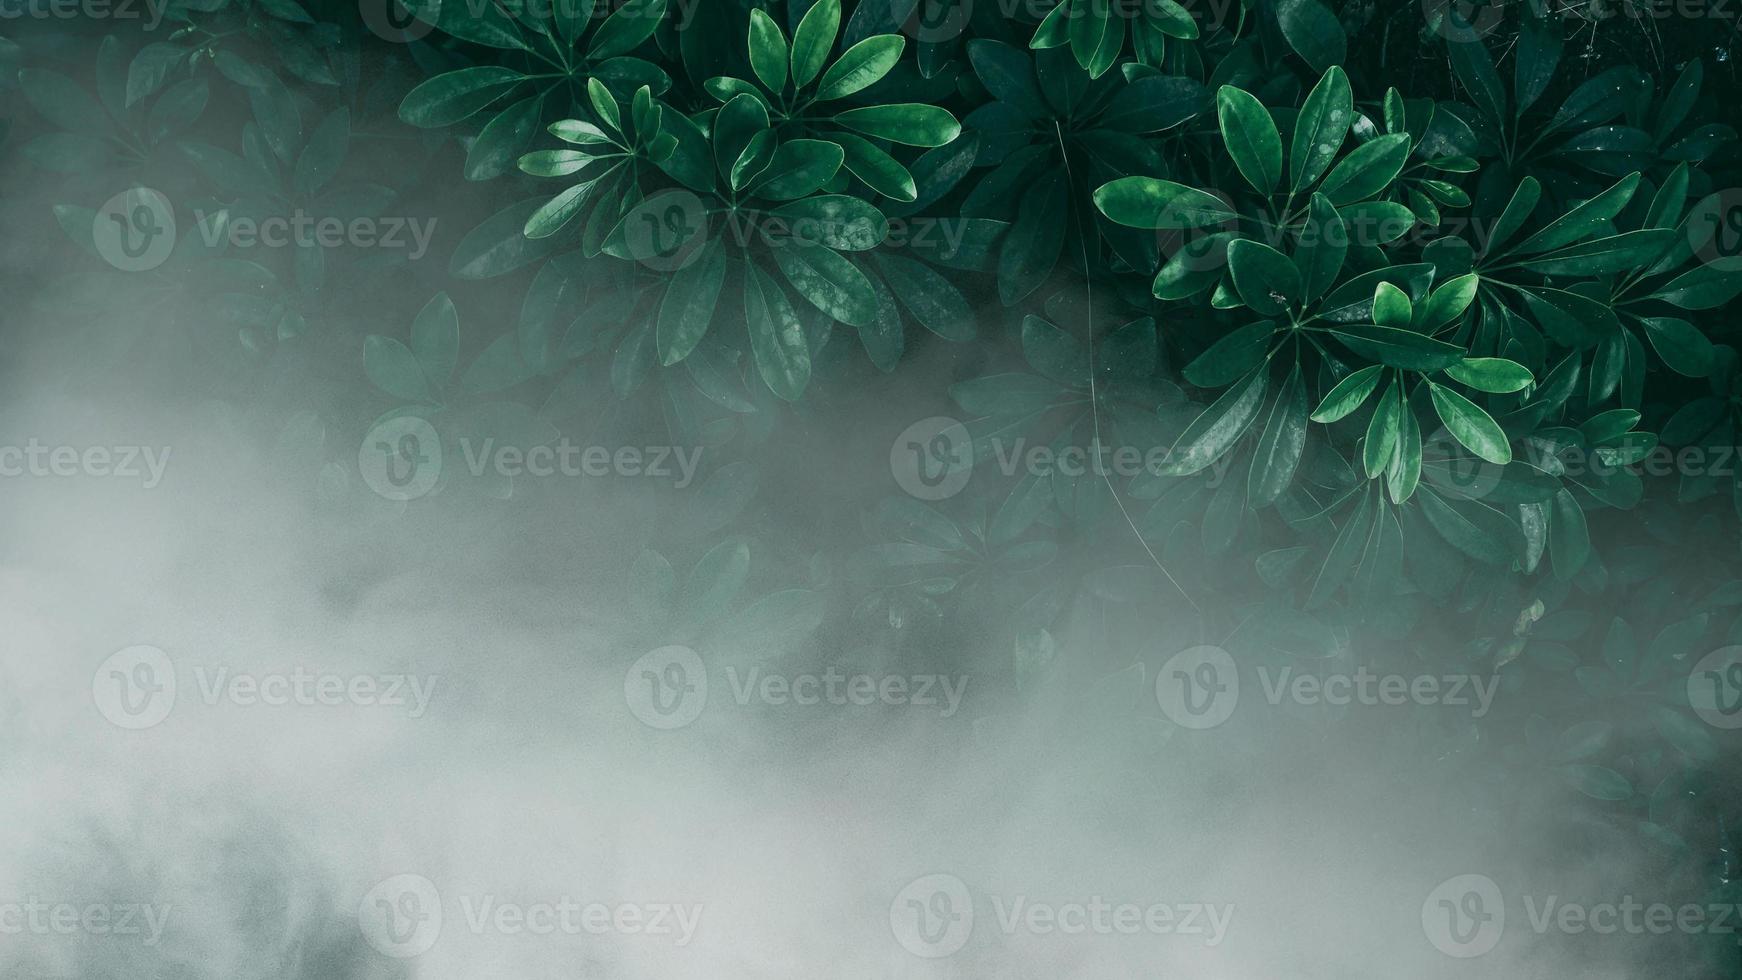 vertikal trädgård med tropiskt grönt blad med dimma och regn, mörk ton foto